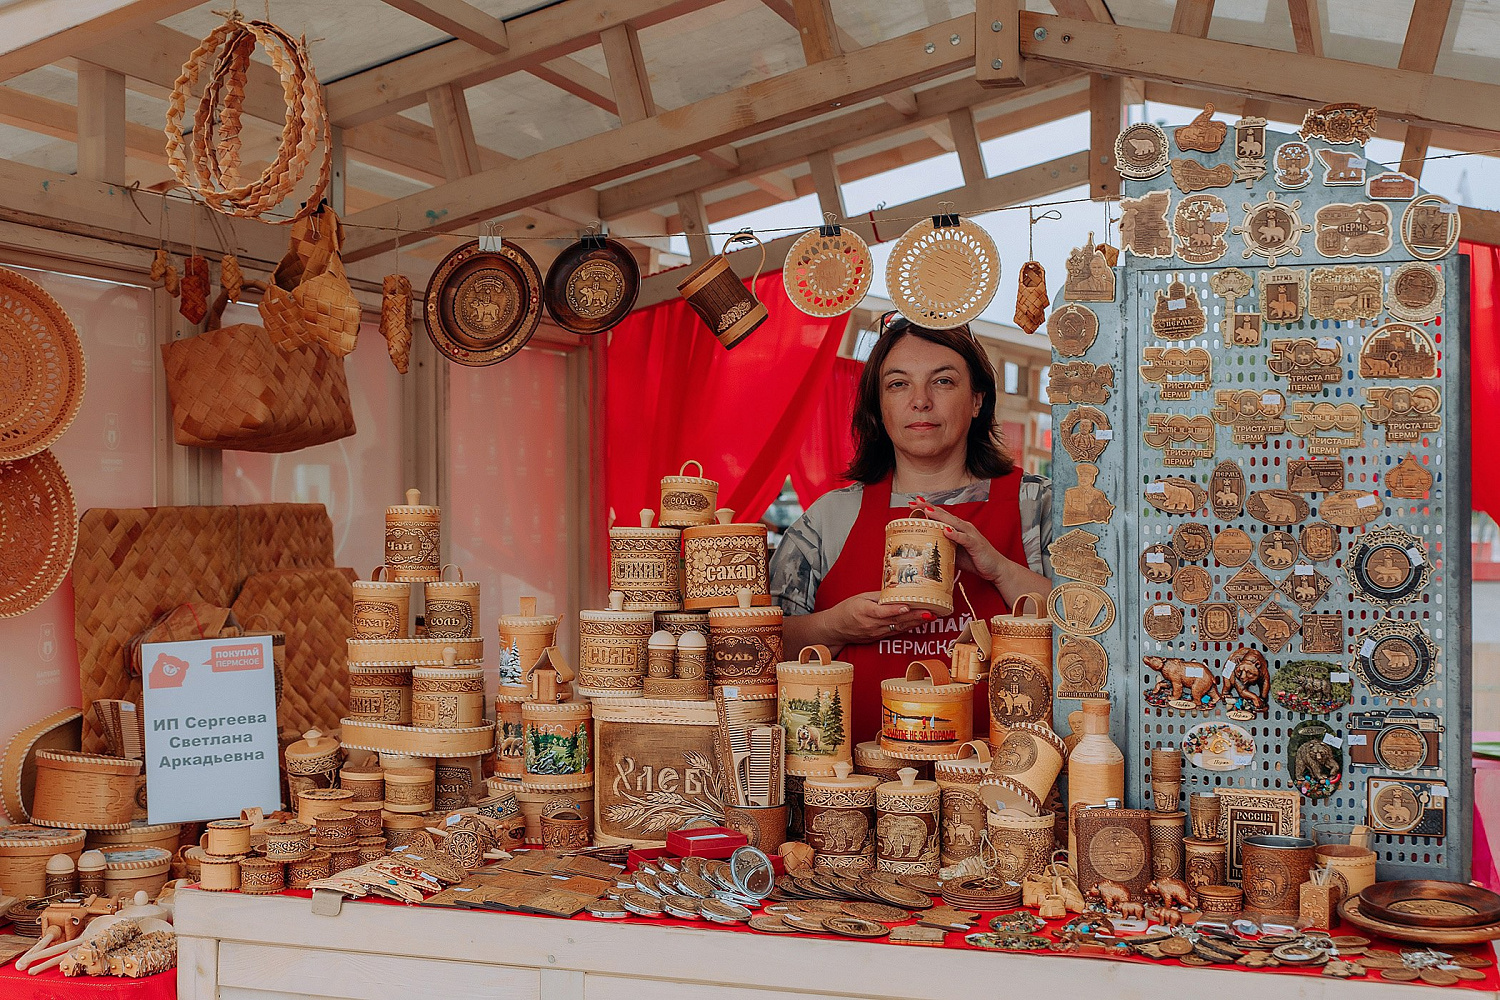 Пермские предприниматели смогли представить свою продукцию на городских ярмарках с помощью господдержки